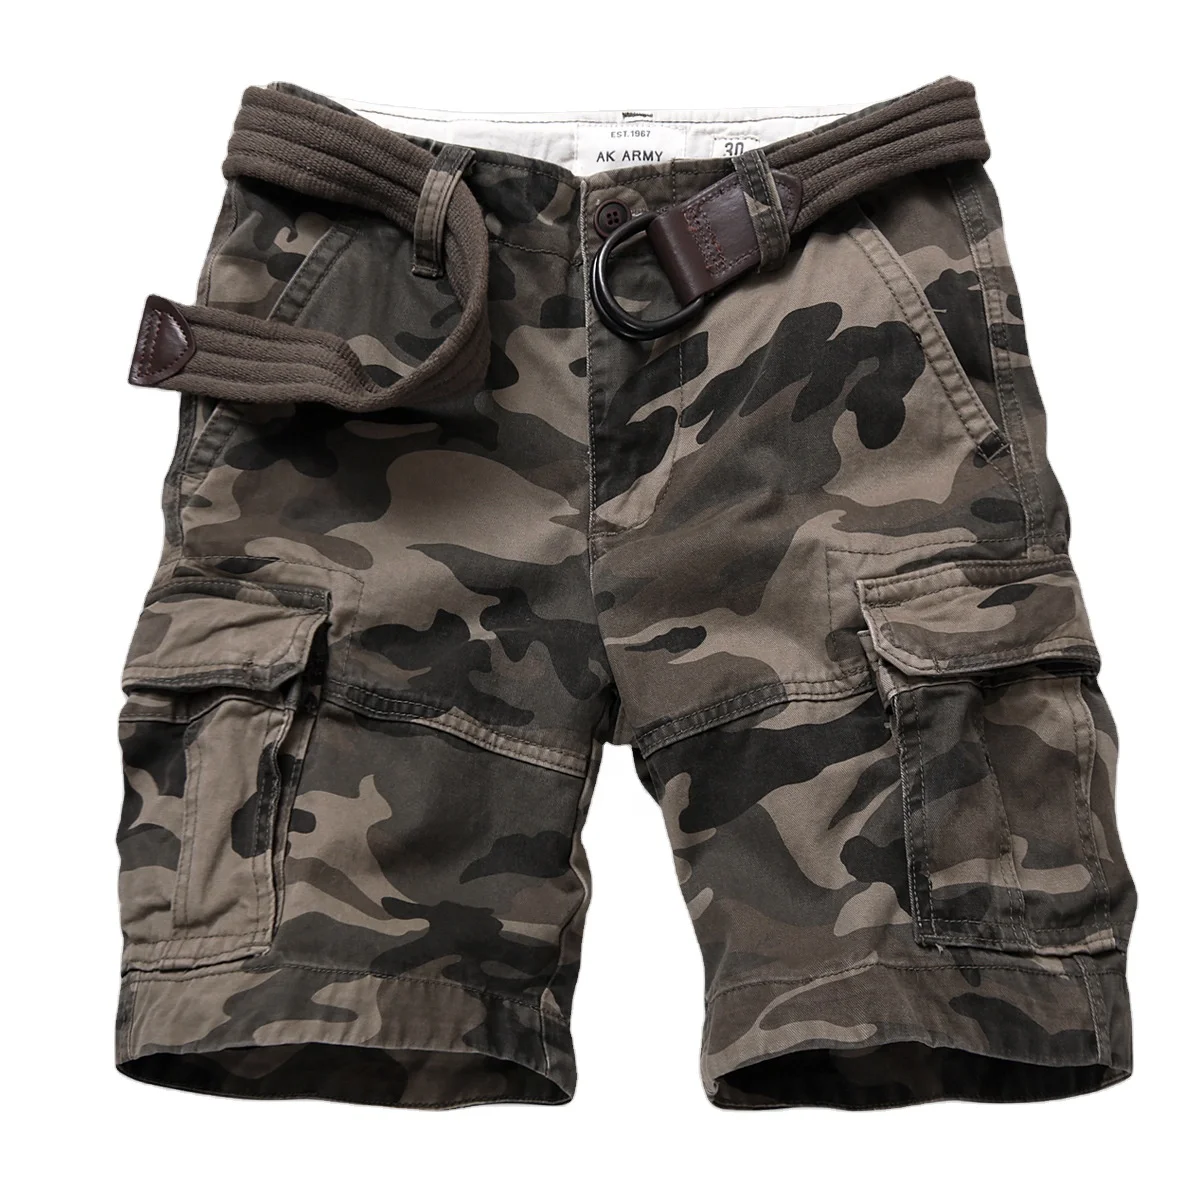 Wholesale Men's Camouflage Shorts,Fashion Shorts,Fitness Sports Short ...